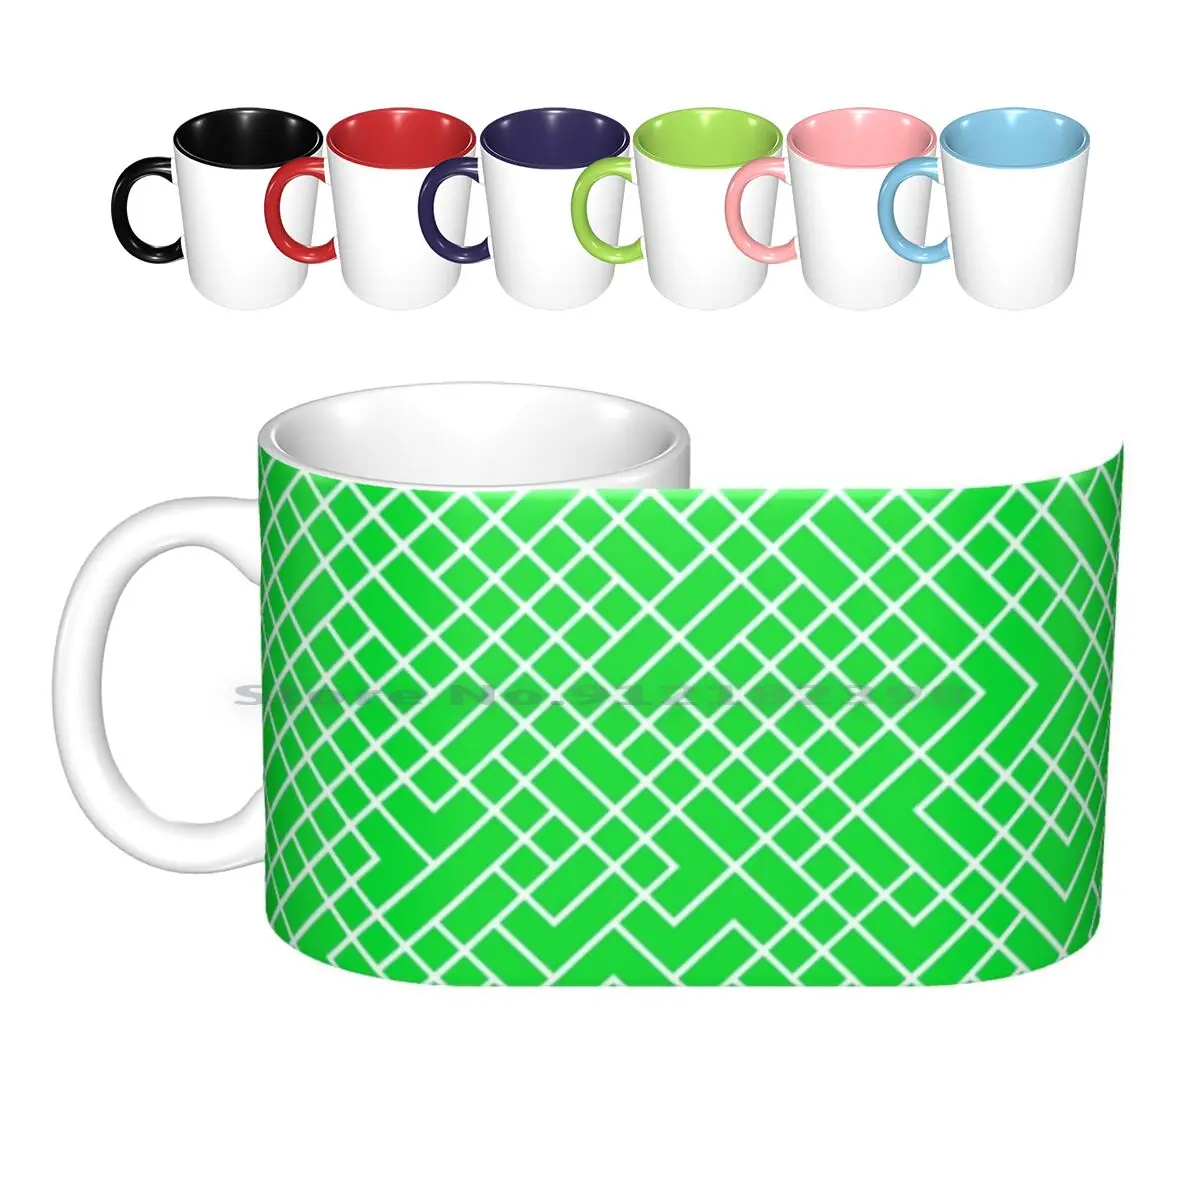 

Керамические кружки с изображением что-то о тетрис-зеленой версии, кофейные чашки, кружка для молока, чая, лабиринт, линия, блоки для Тетрис, ...